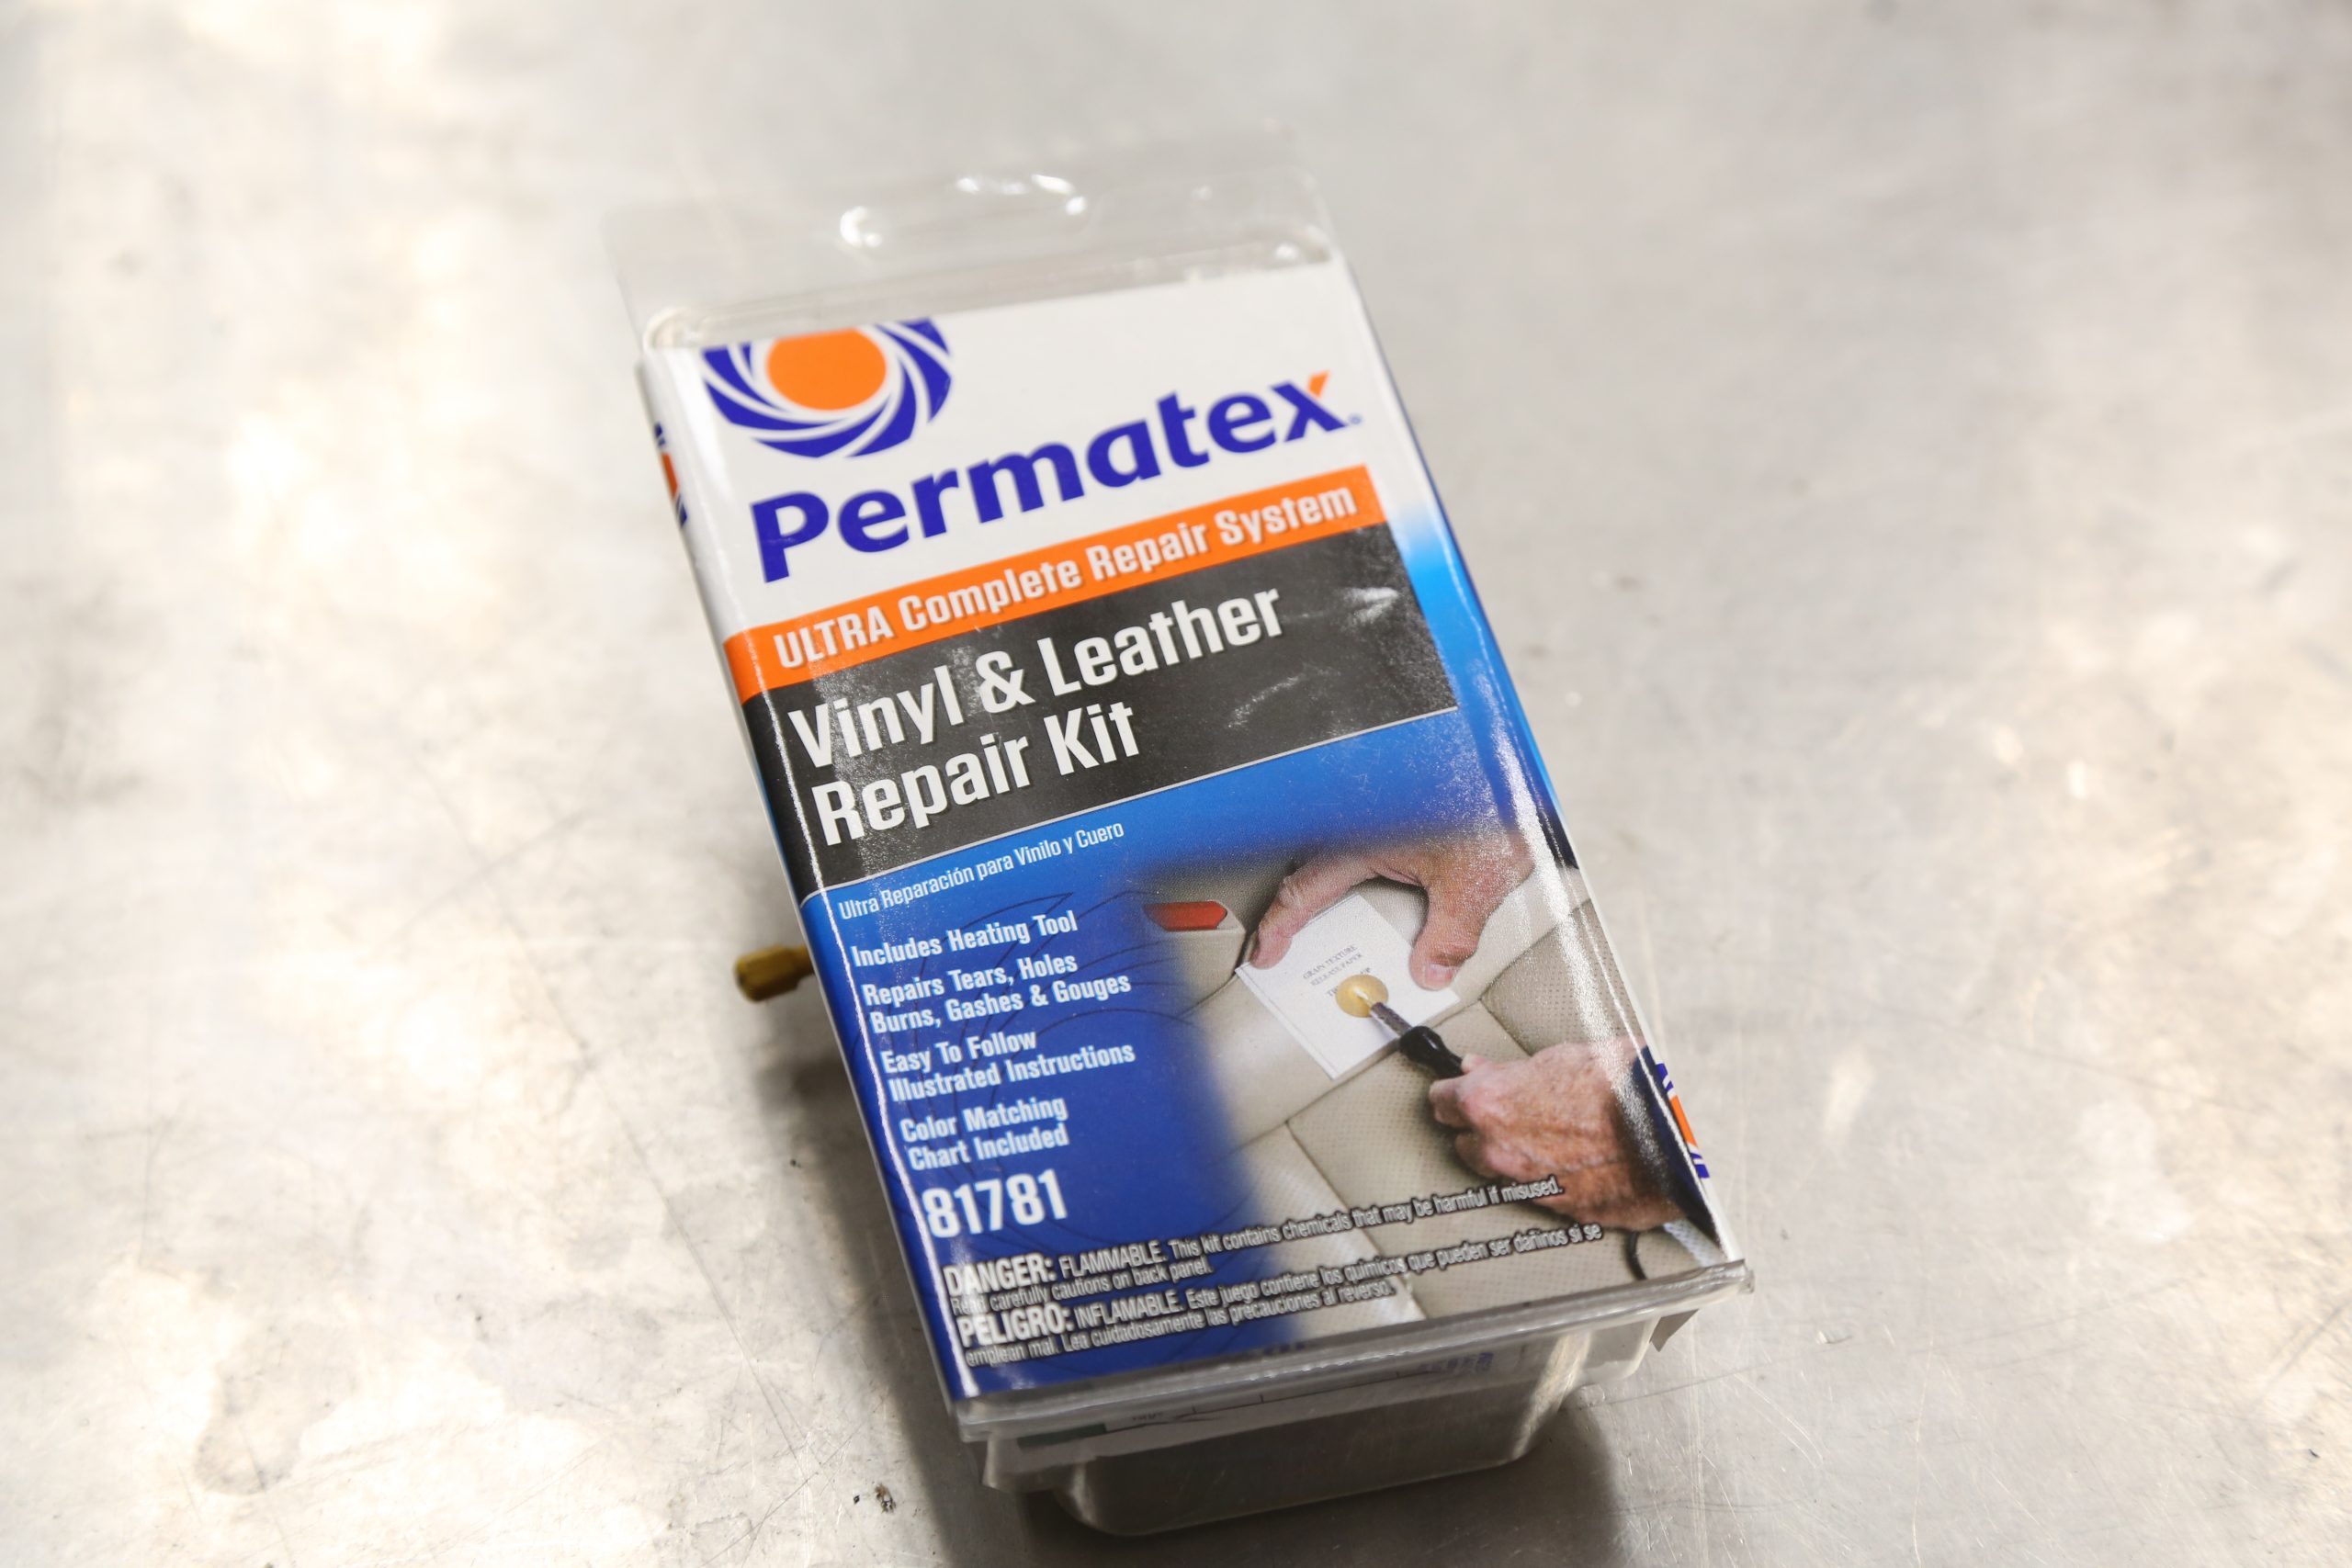 Permatex Vinyl And Leather Repair Kit 81781